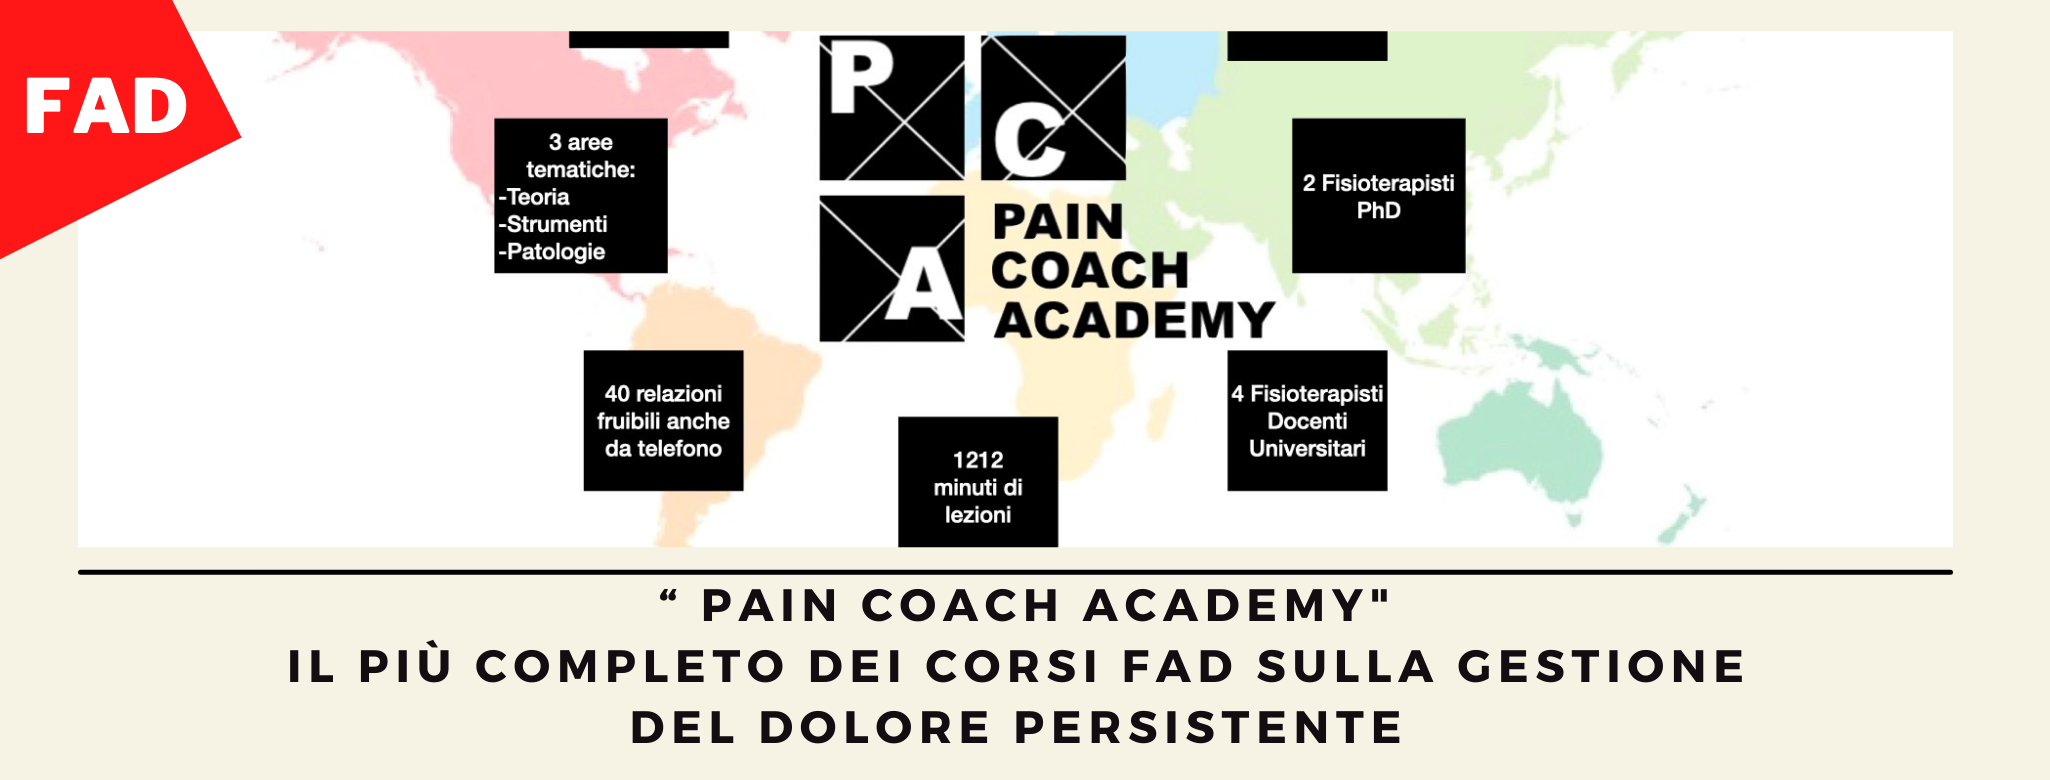 Pain Coach Academy - FAD